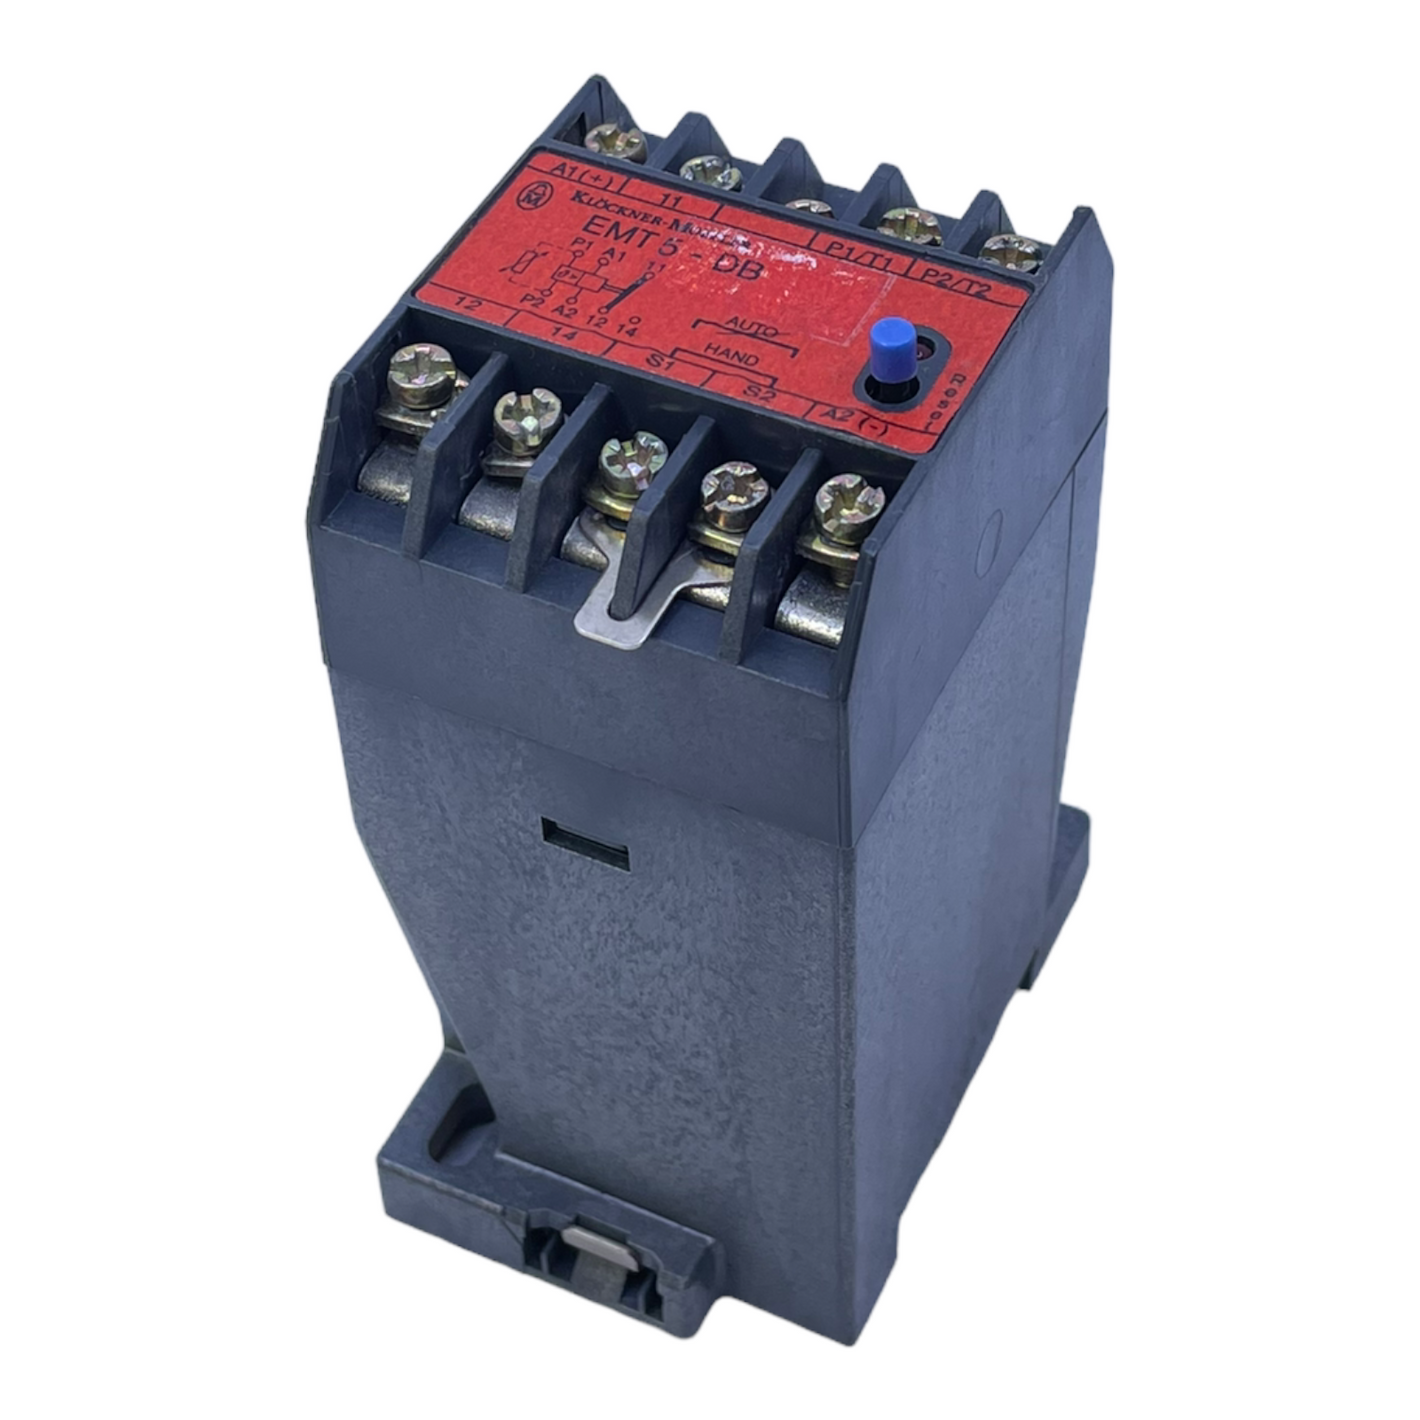 Klöckner Moeller EMT5-DB motor protection relay 220V 50/60Hz 